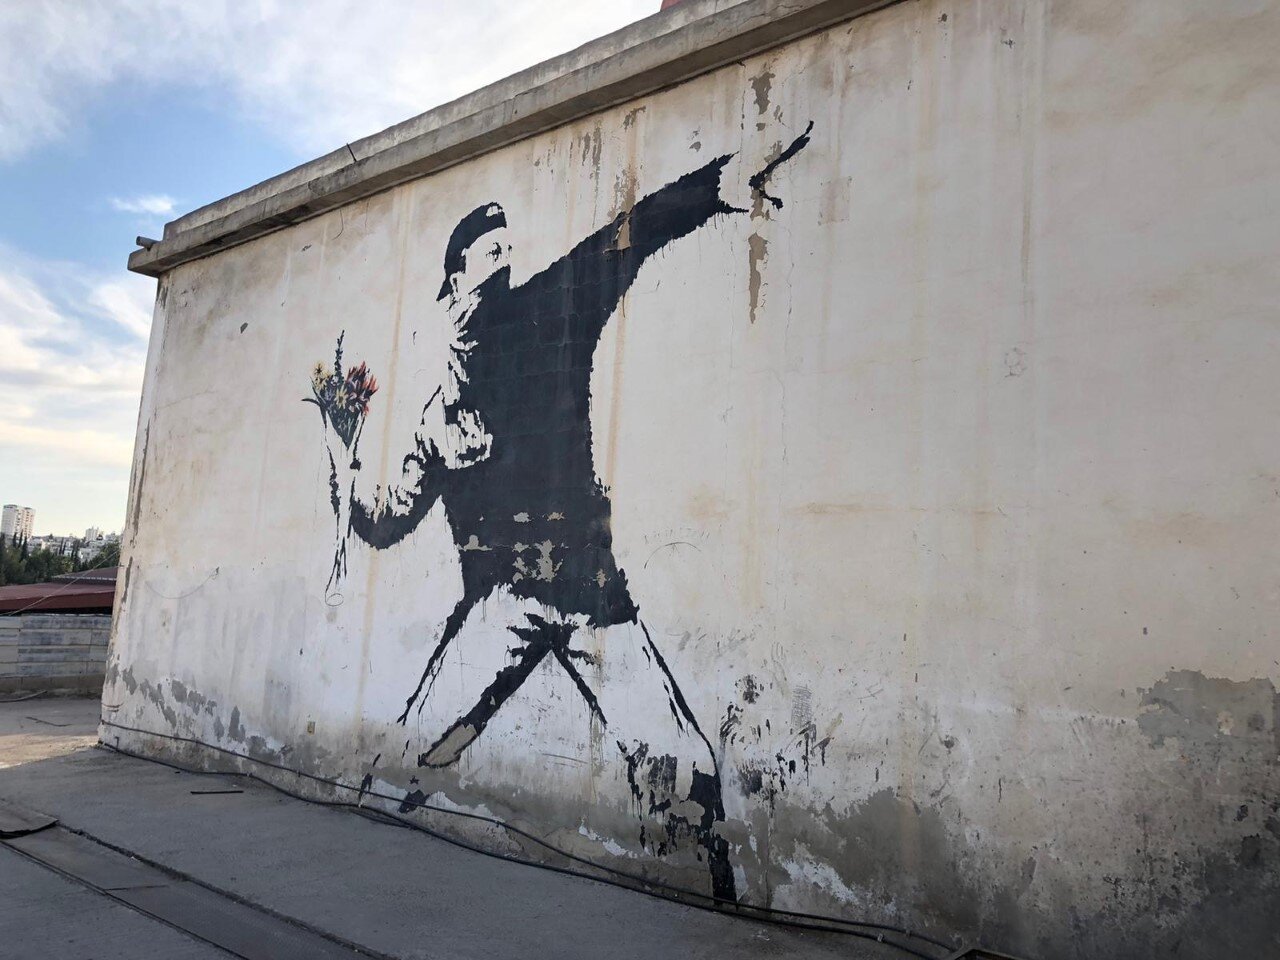 Banksy in Palestine Get a Banksy Blog — Get a Banksy